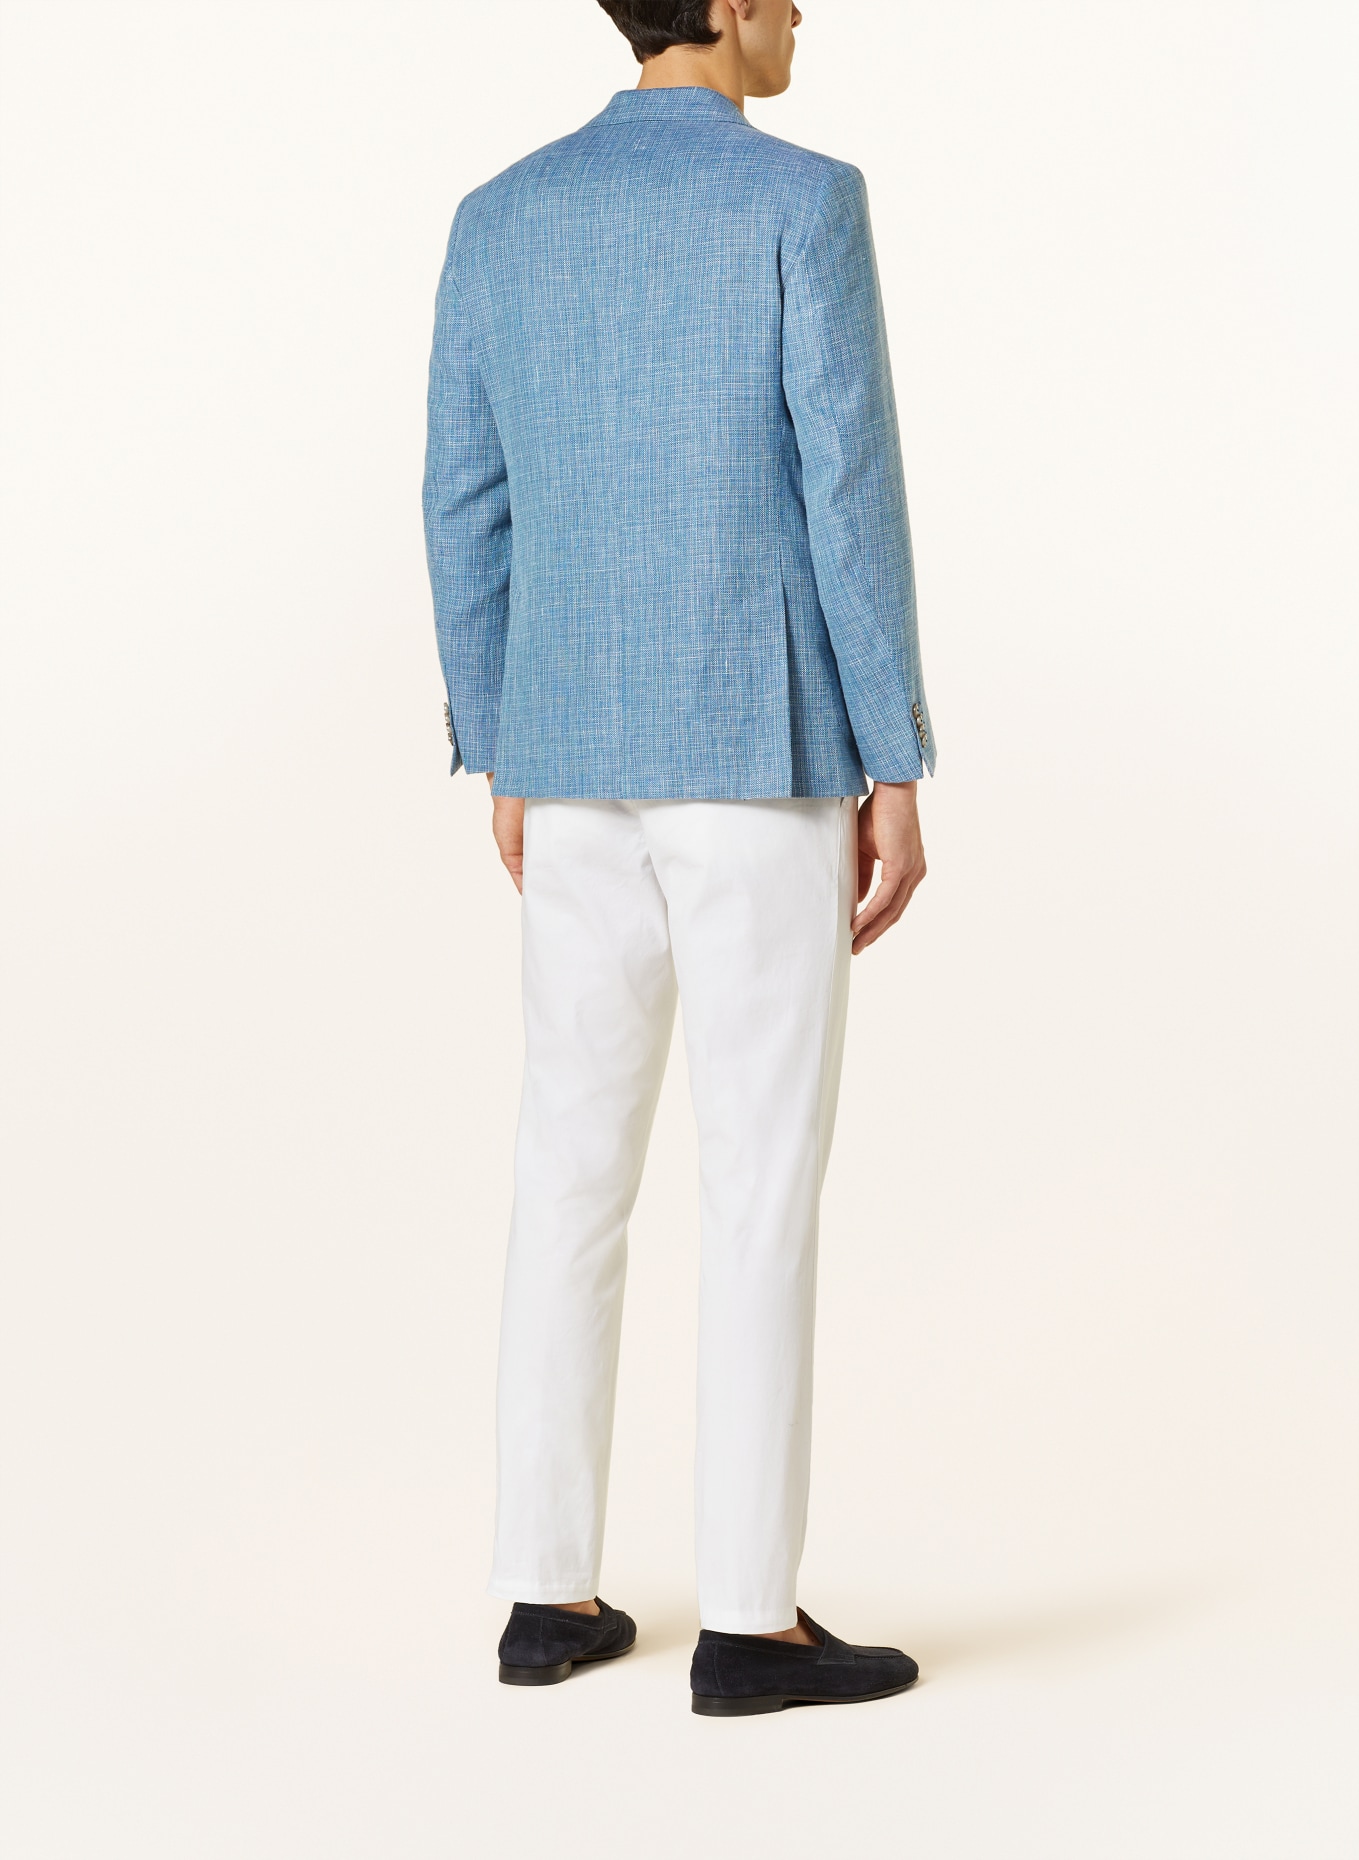 EDUARD DRESSLER Tailored jacket MATTEO comfort fit with linen, Color: 039 HELLBLAU (Image 3)